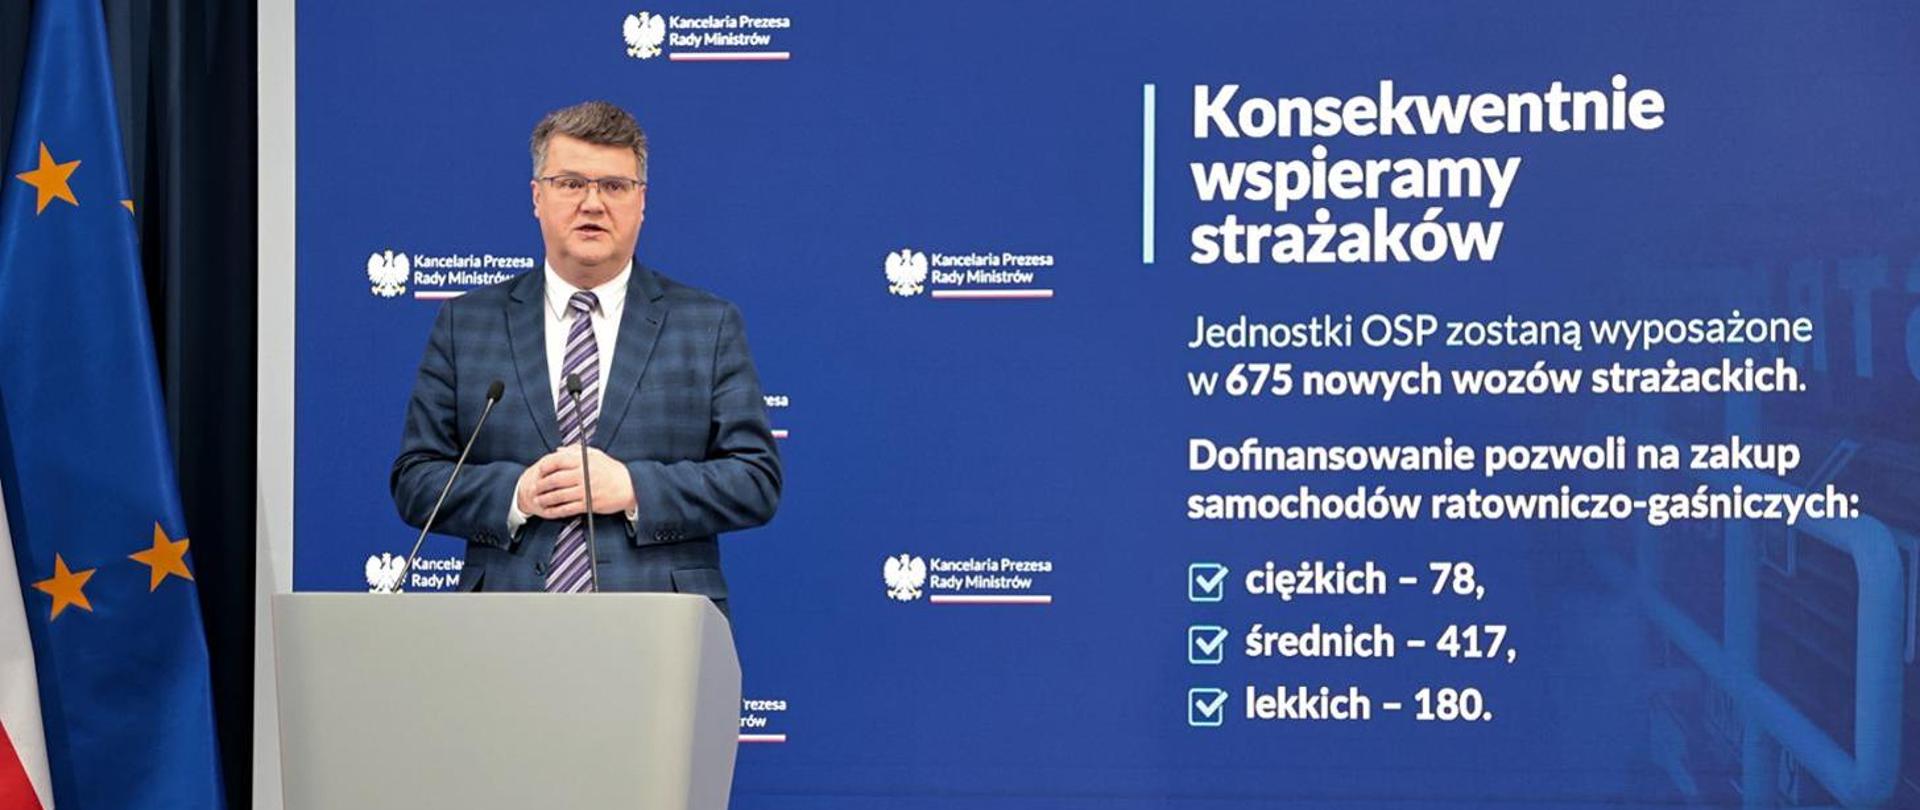 Minister Wąsik podczas konferencji prasowej przy mównicy